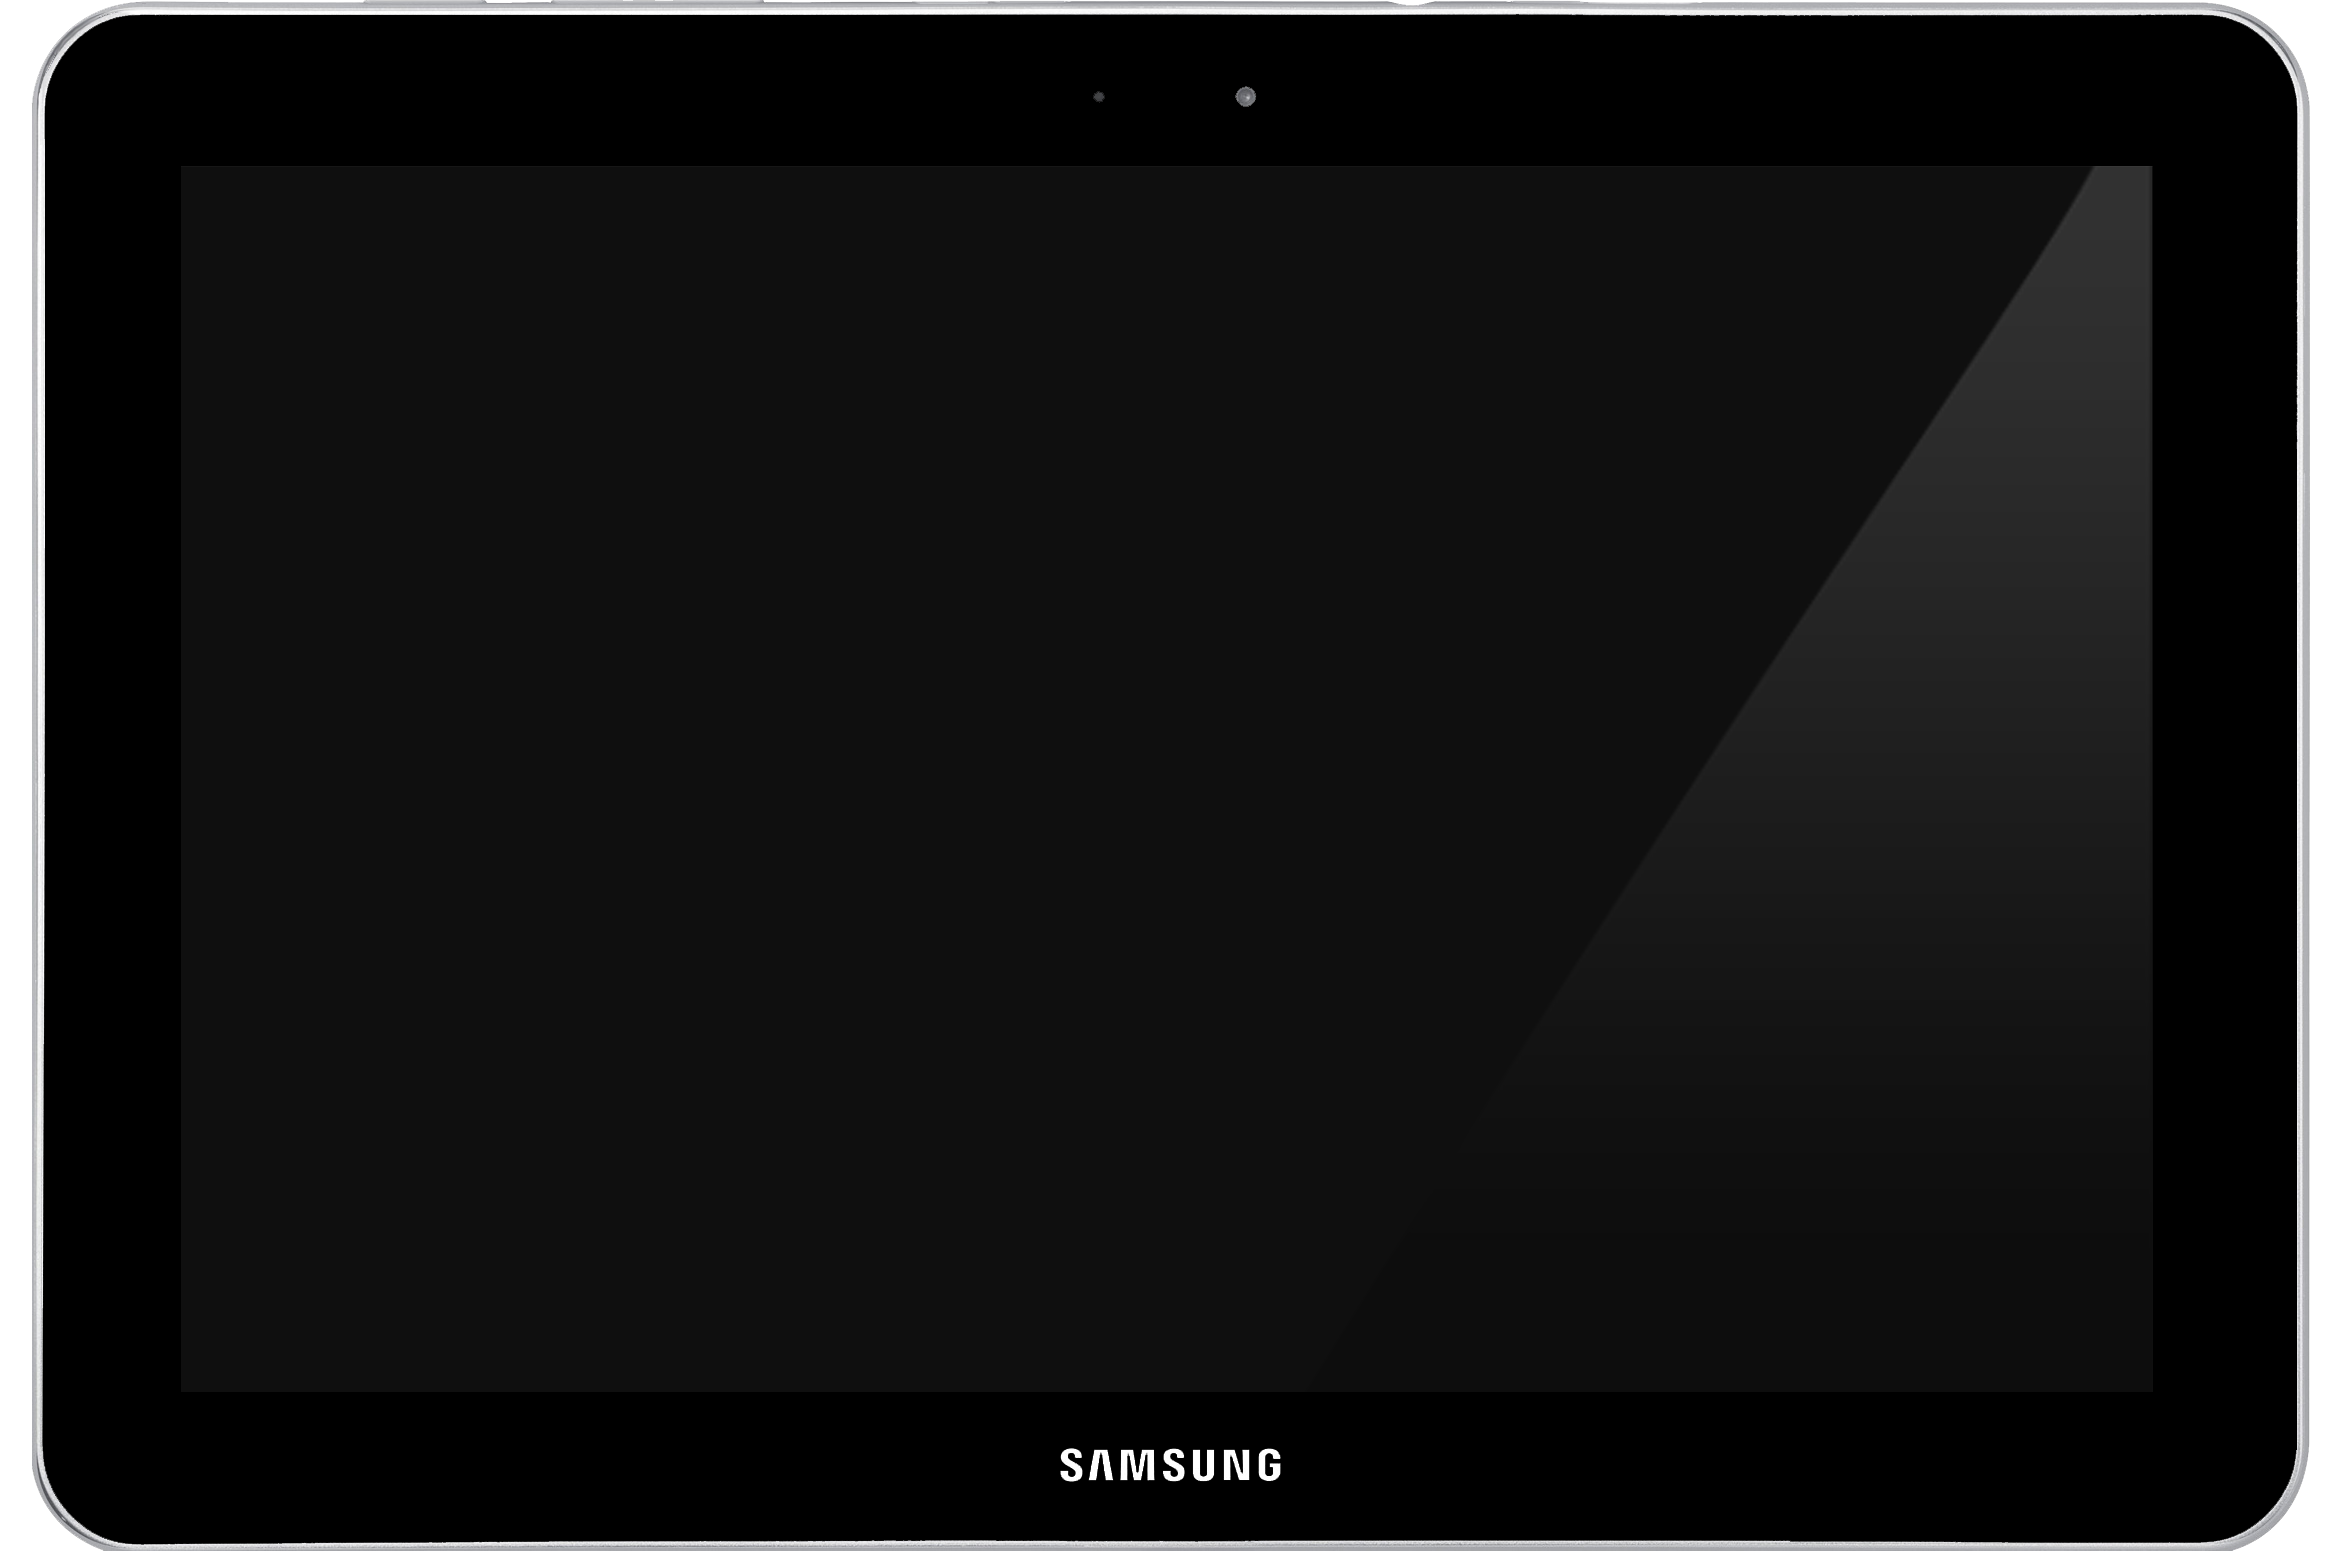 Samsung galaxy tab a 10.1 manual